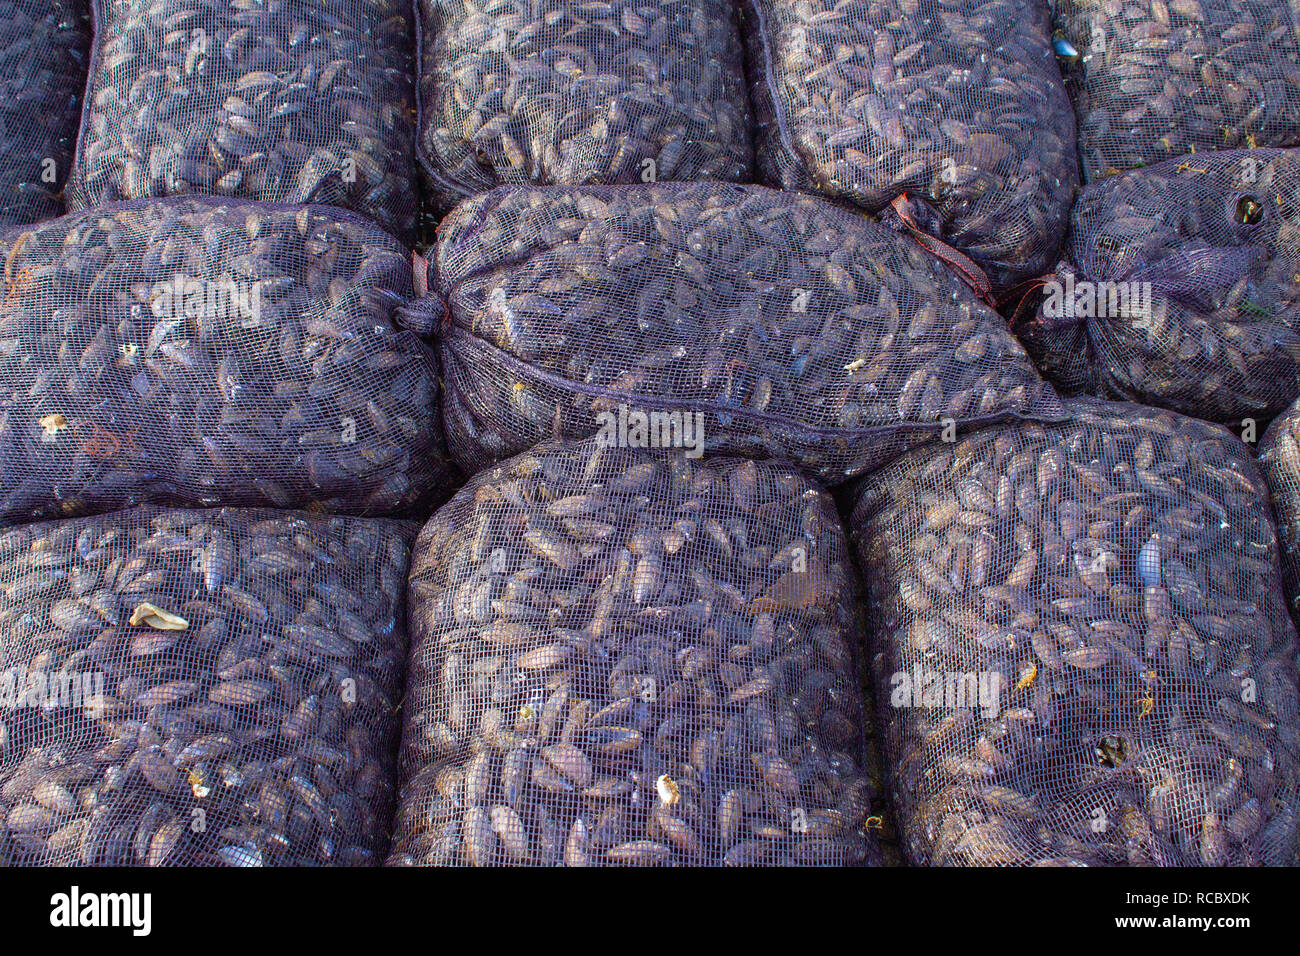 sacks of fresh irish mussels Stock Photo